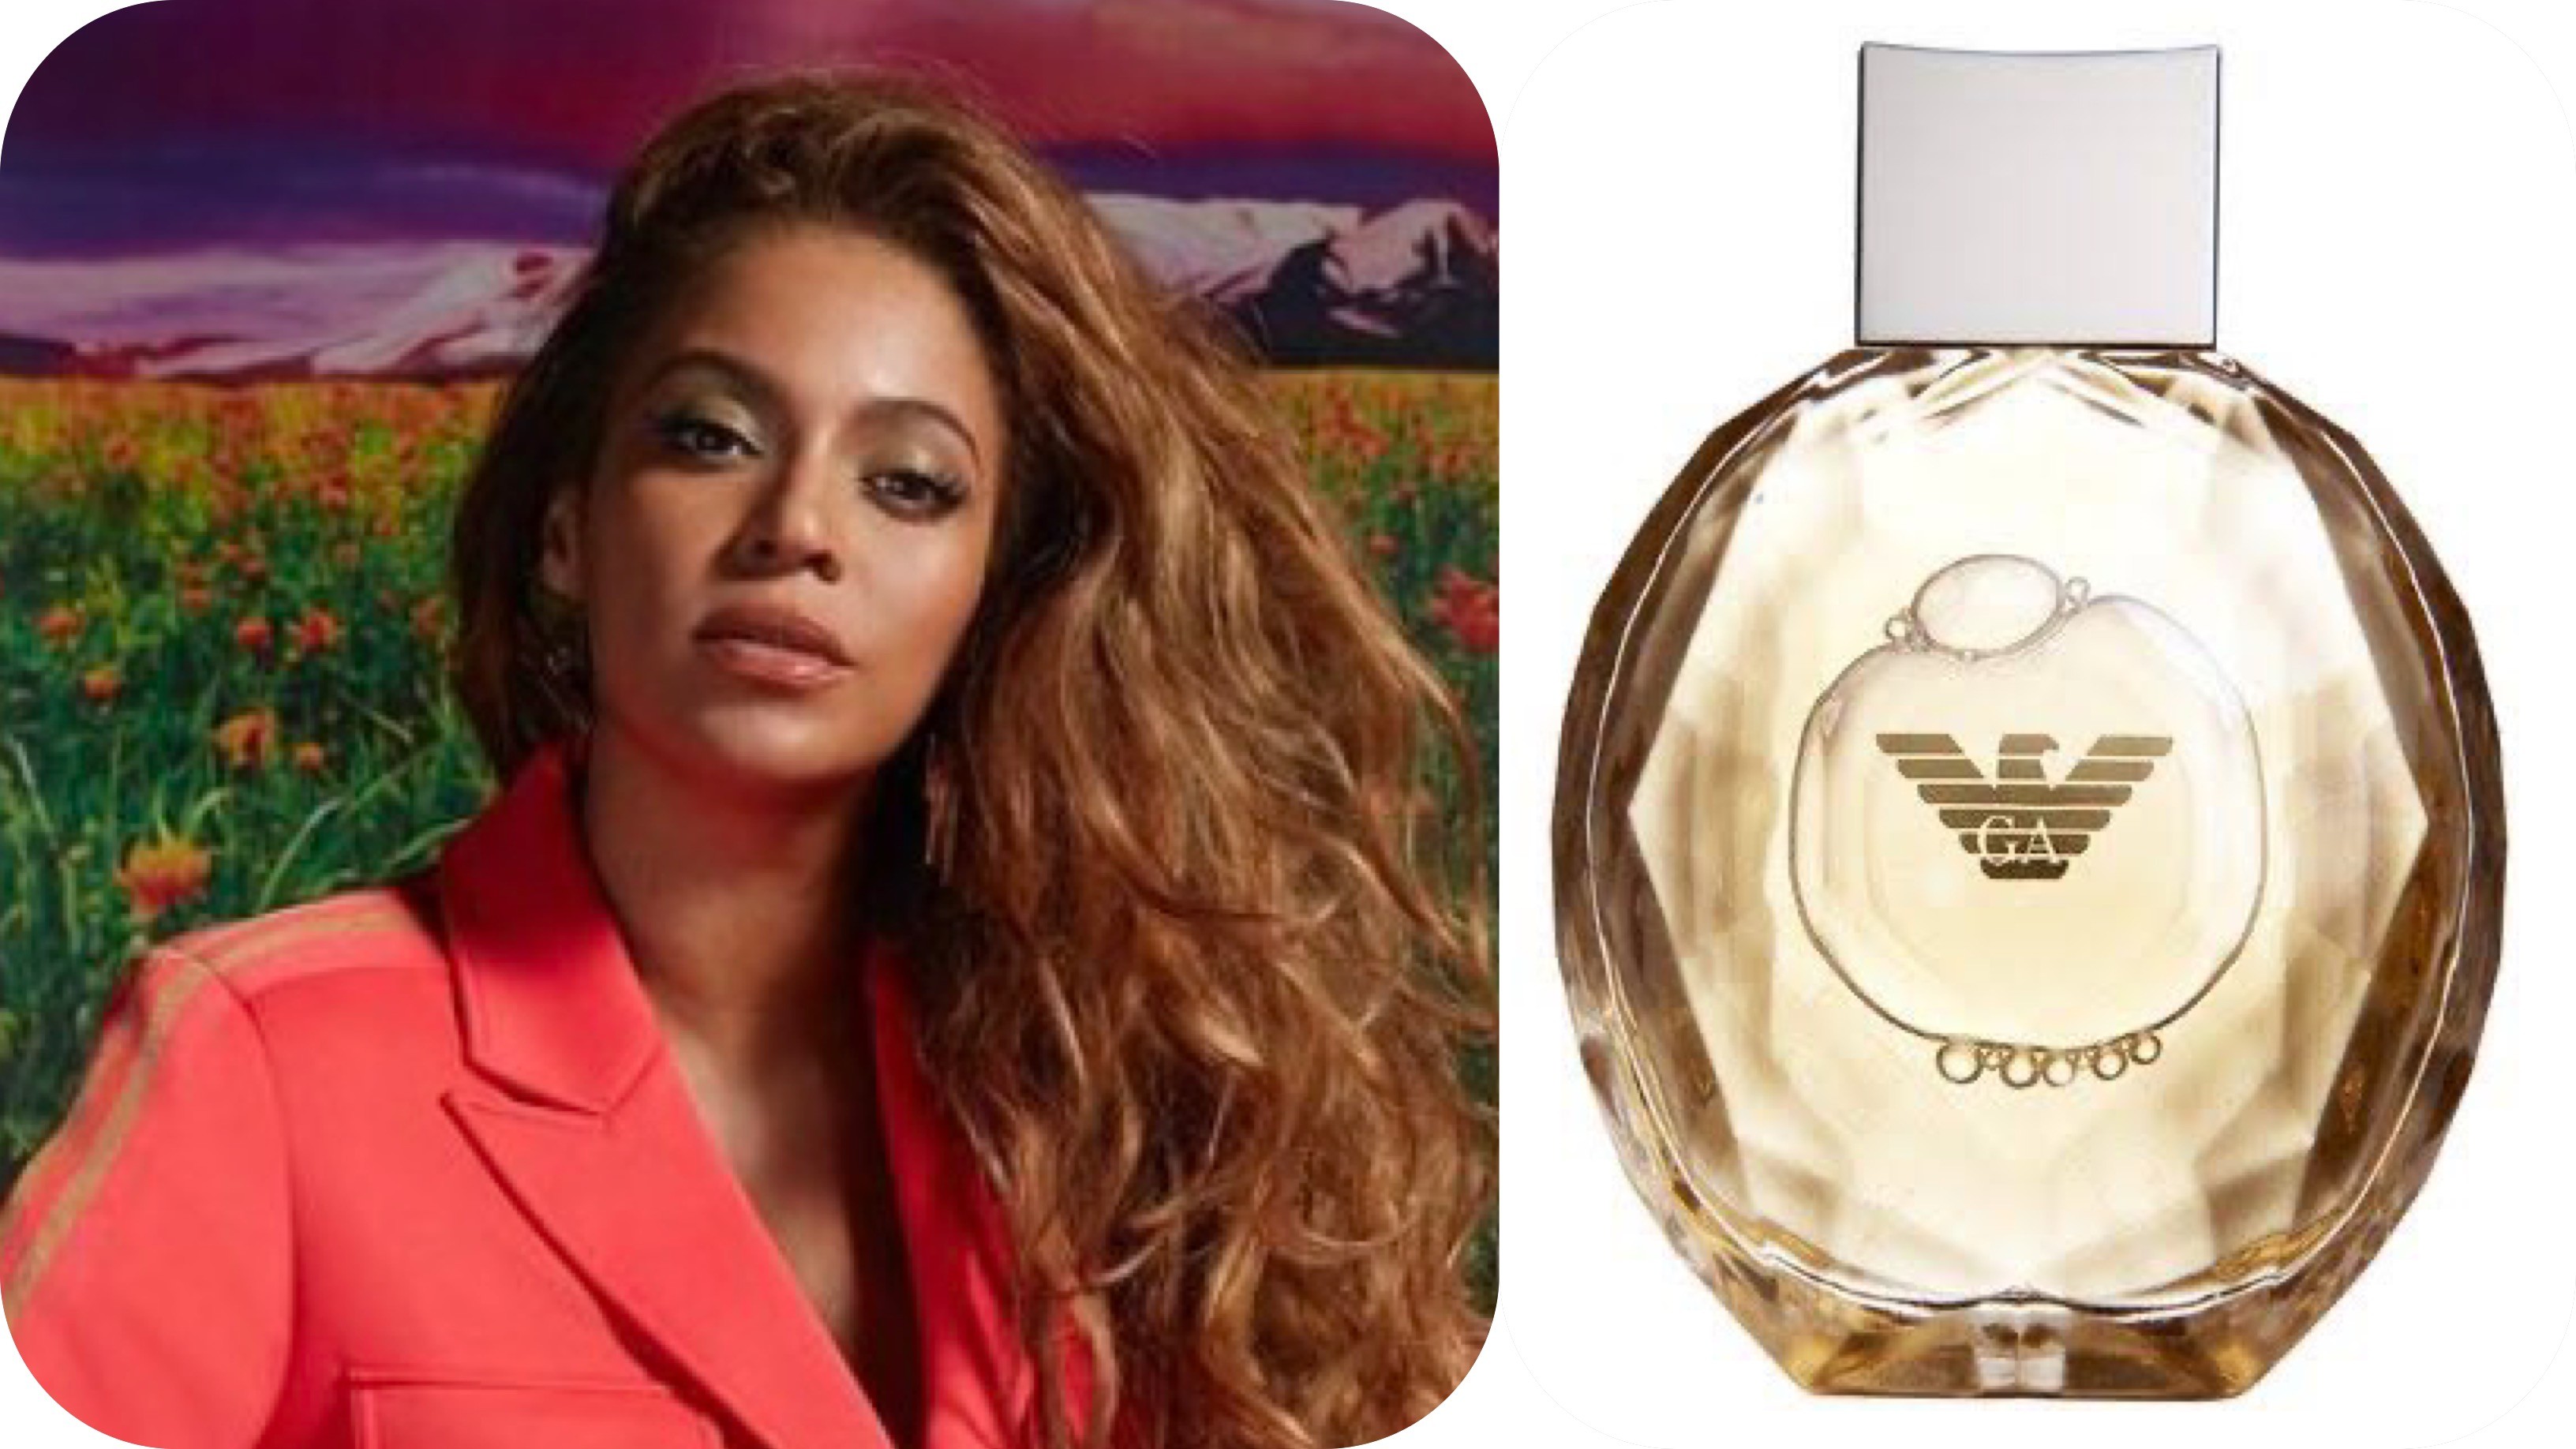 O perfume de Beyonce - Diamonds Intense, da Emporio Armani (Foto: Reprodução Instagram / Divulgação)